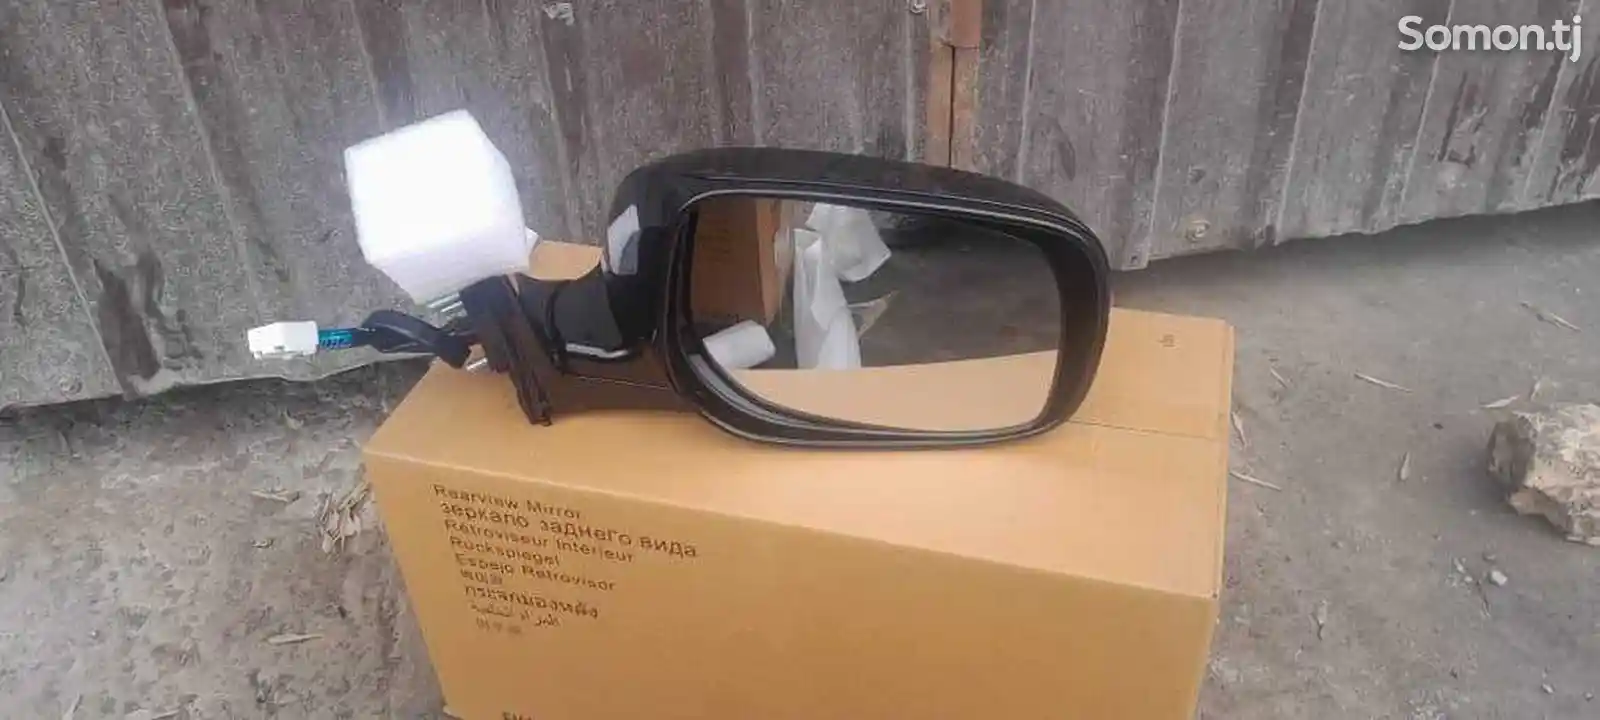 Боковое зеркало с поровотником на Toyota Camry 2-3